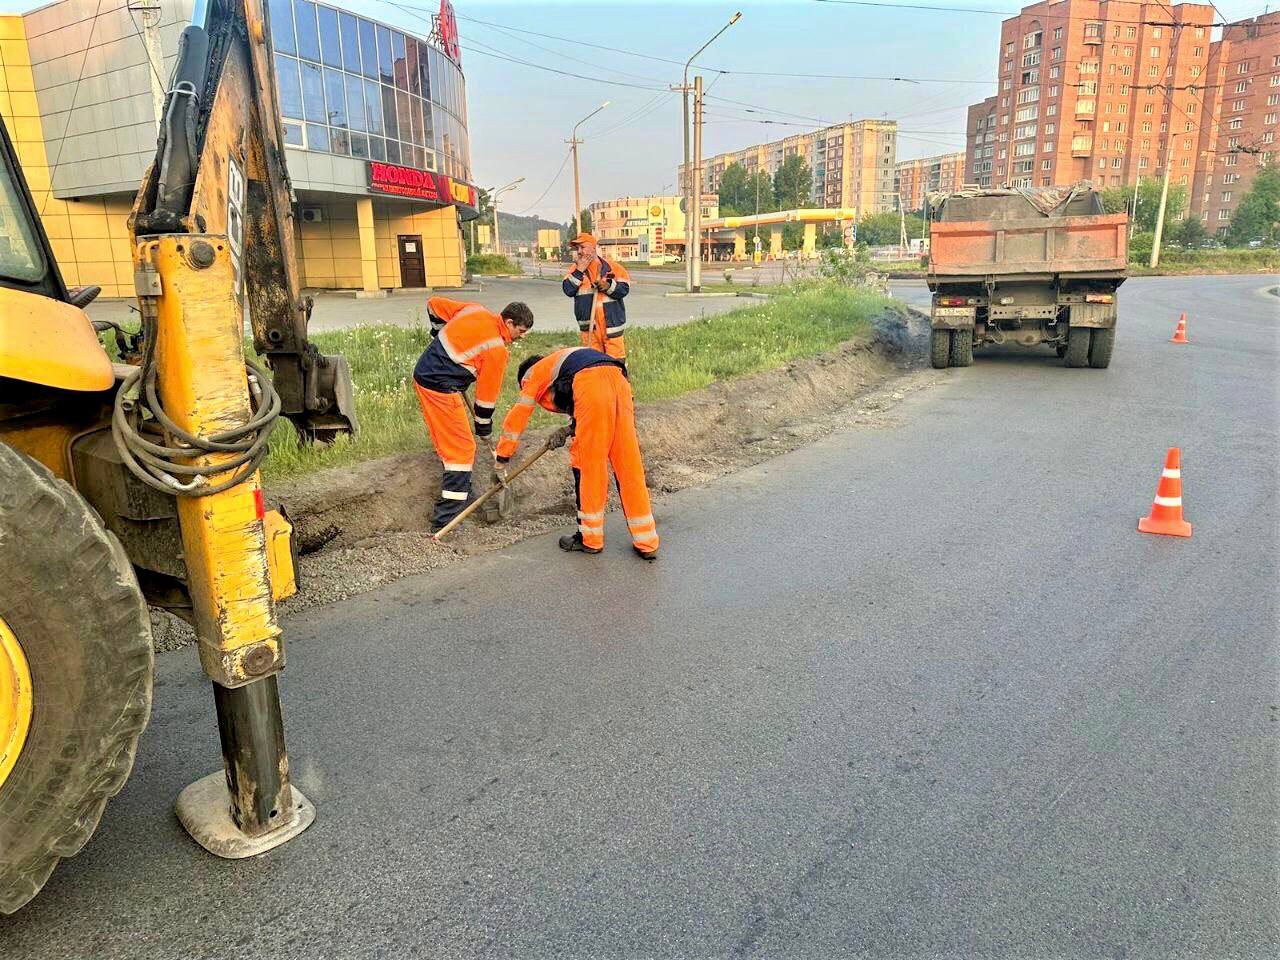 «Уже в работе»: Сергей Кузнецов рассказал об обновлении 11 километров дорожного покрытия в Новокузнецке